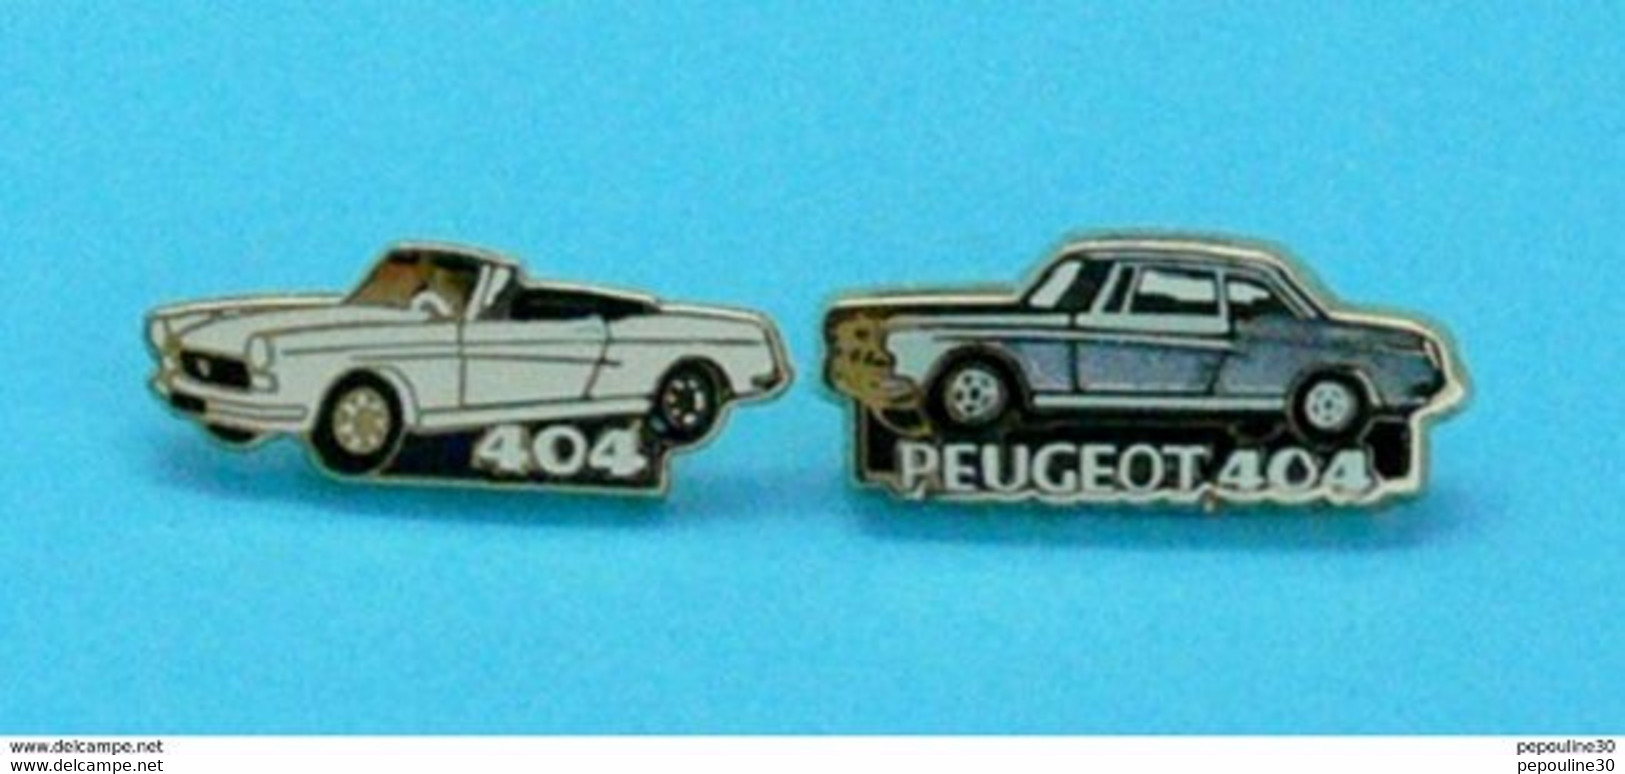 2 PIN'S //  ** MYTHIQUE 404 PEUGEOT & 404 CABRIOLET ** . (Helium Paris) - Peugeot